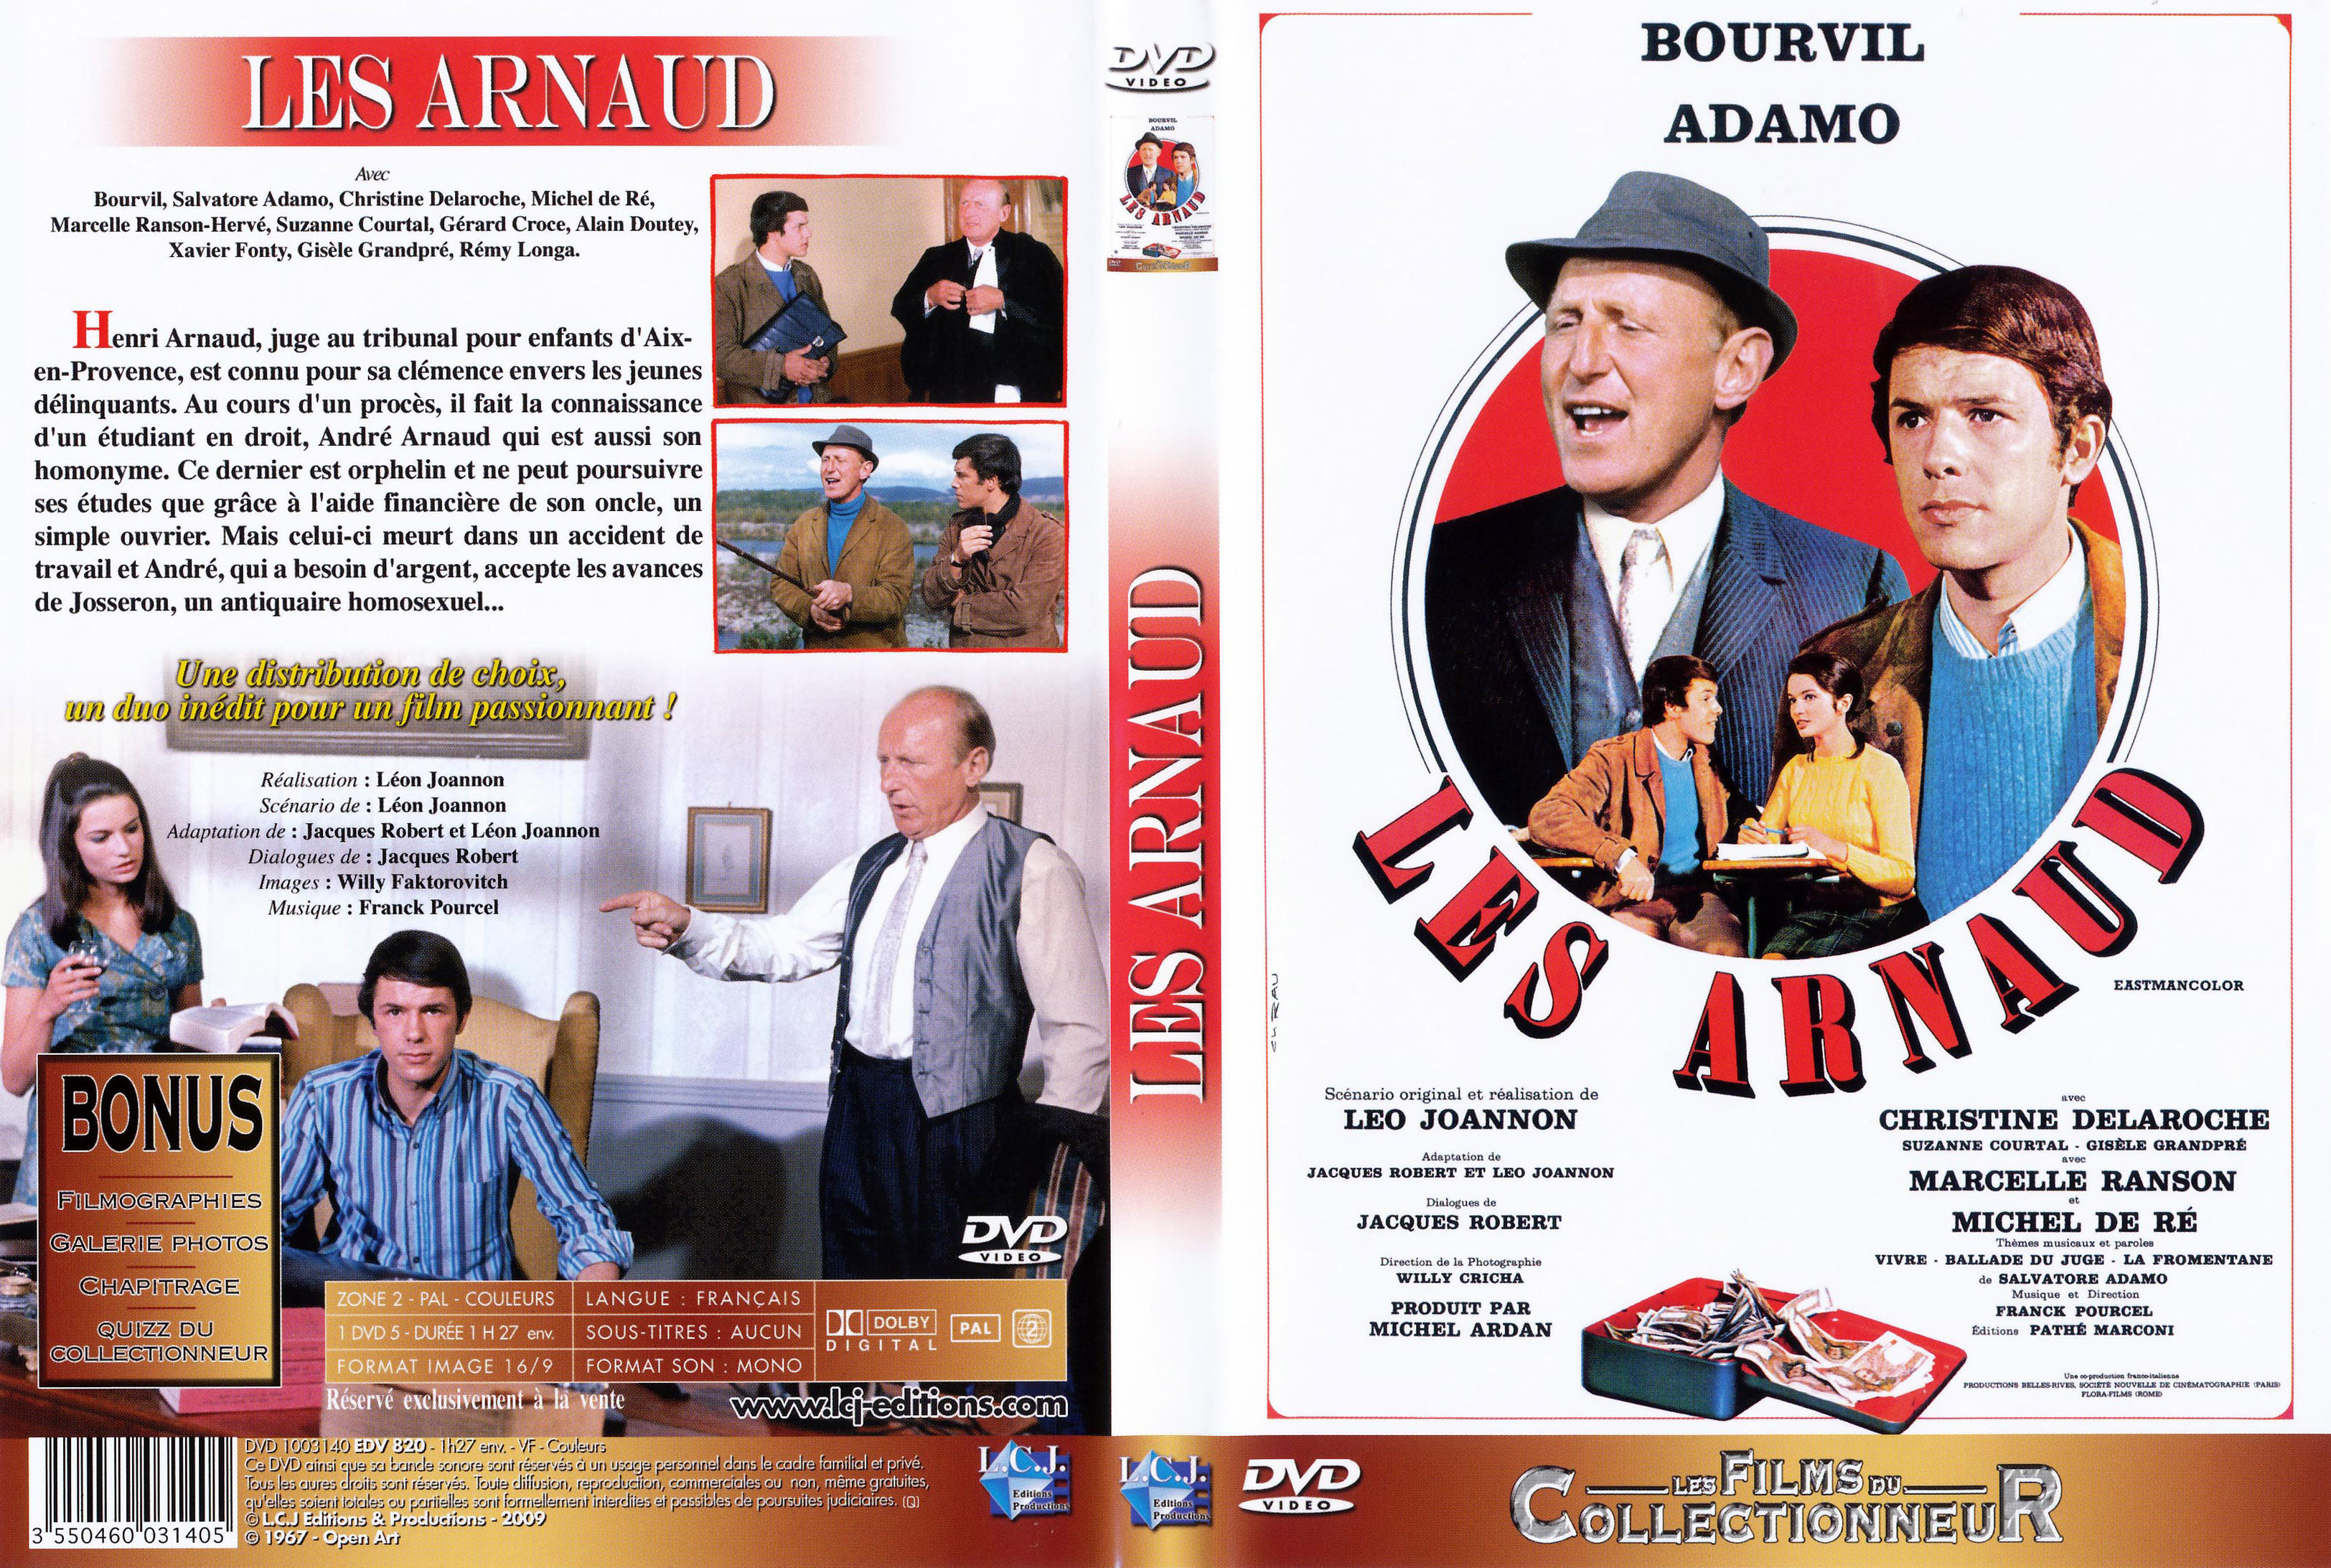 Jaquette DVD Les Arnaud